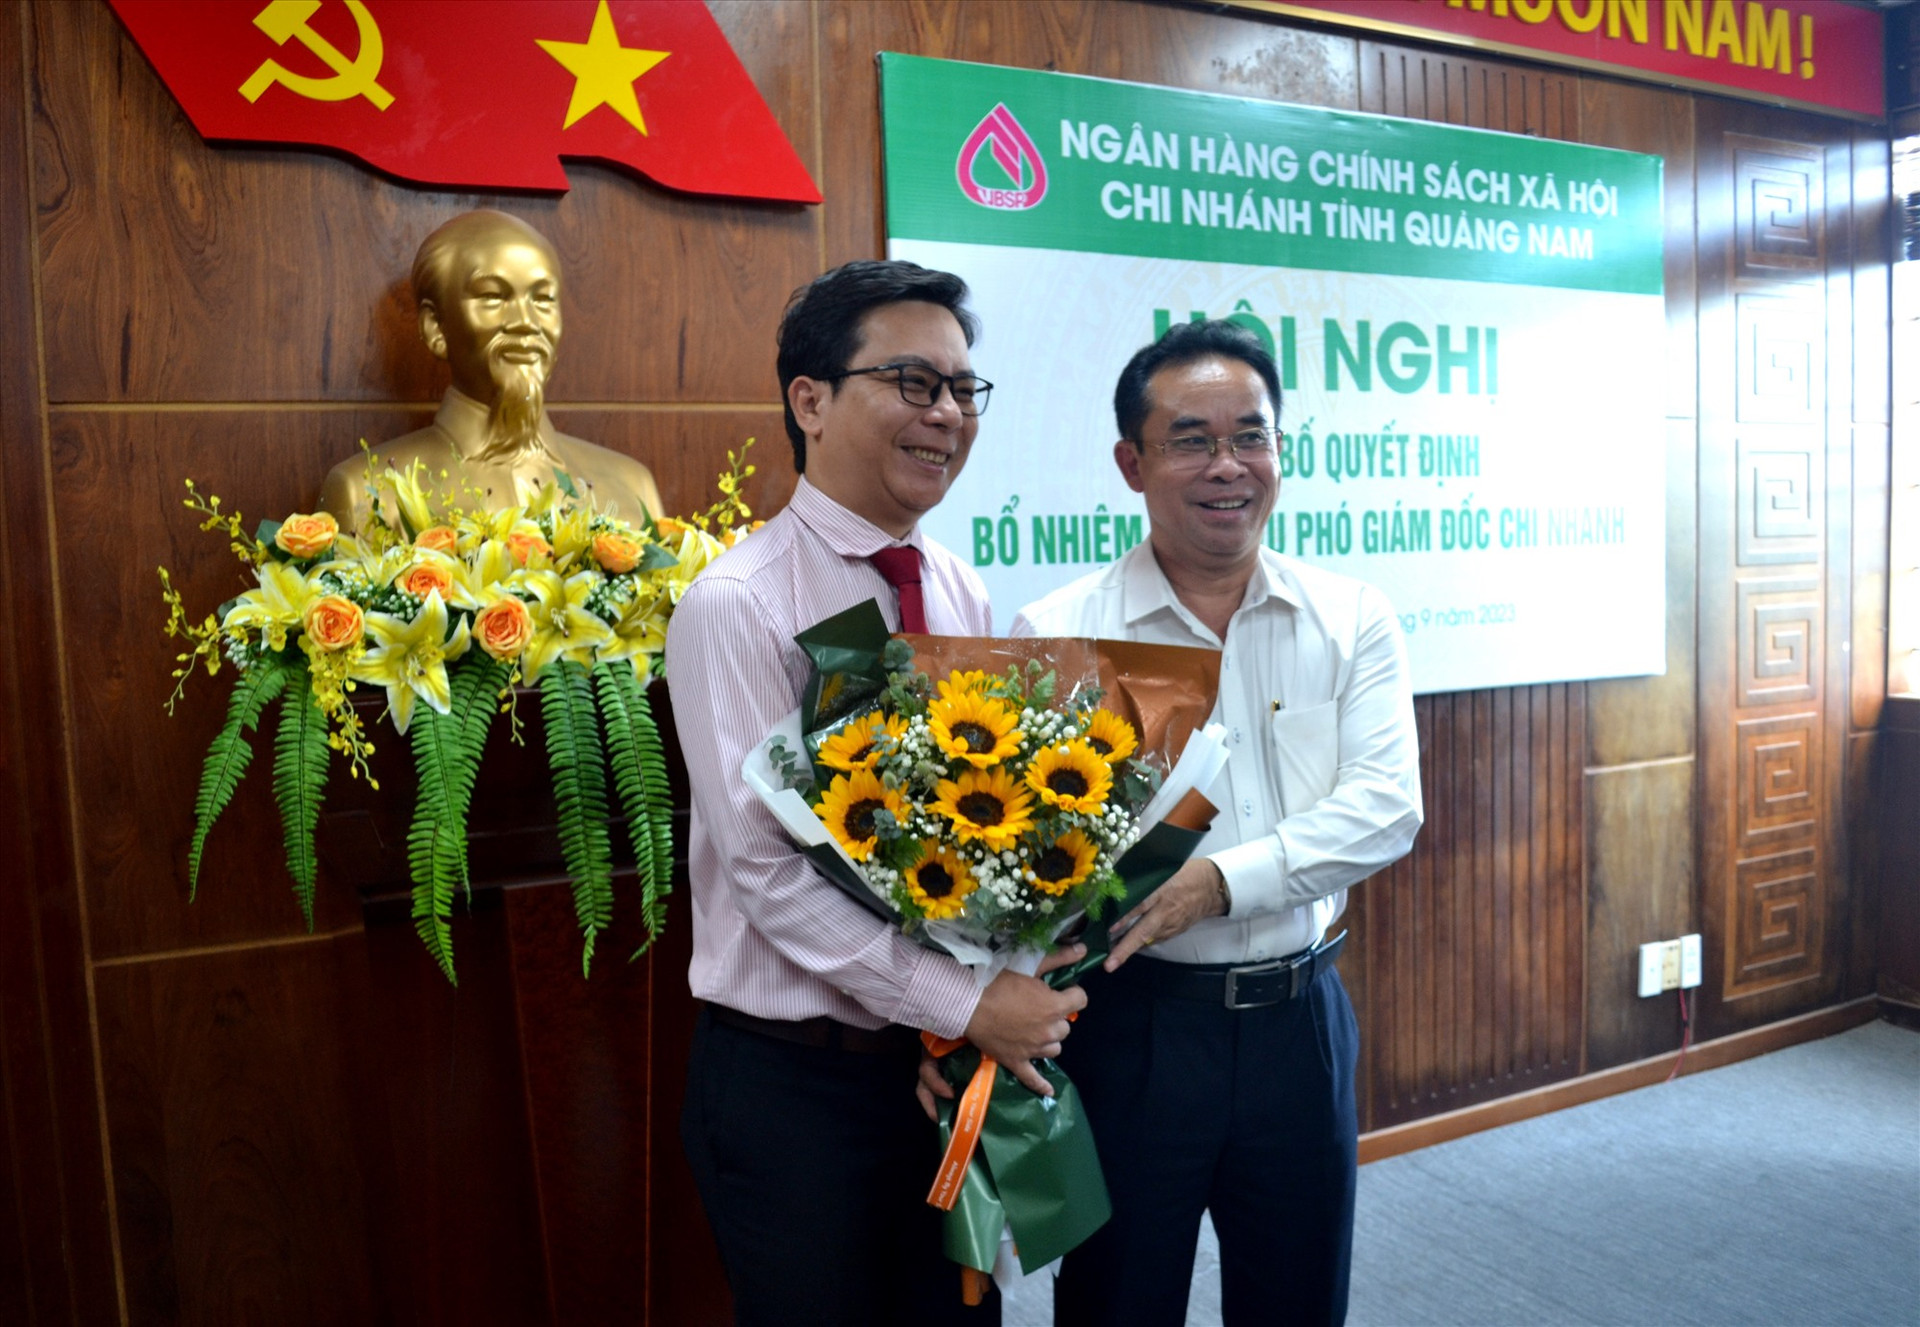 Phó Chủ tịch UBND tỉnh Trần Anh Tuấn tặng hoa chúc mừng ông Nguyễn Dương Quang. Ảnh: Q.VIỆT